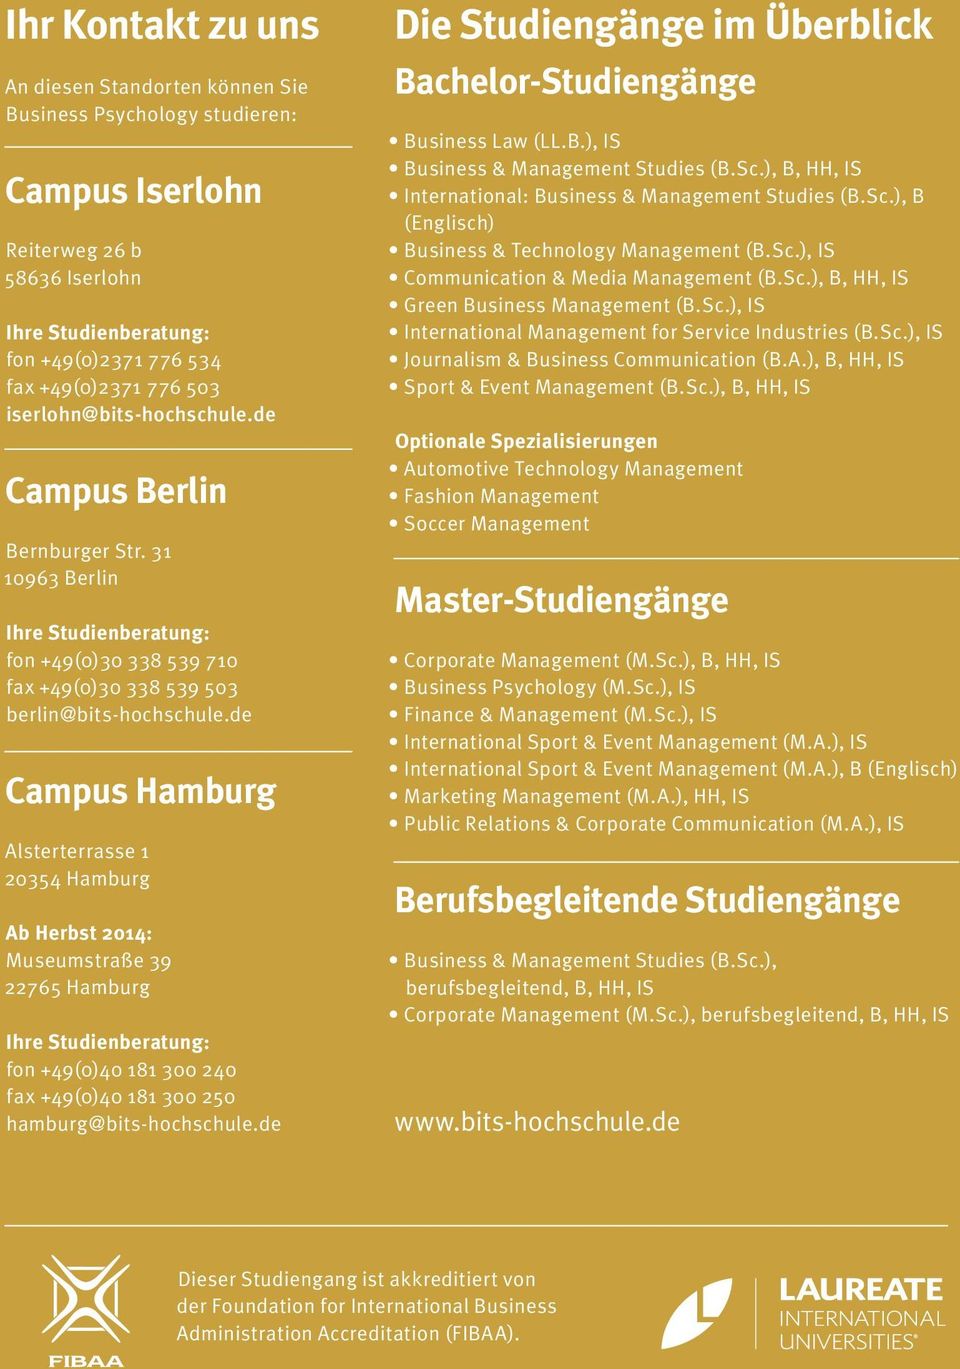 de Campus Hamburg Alsterterrasse 1 20354 Hamburg Ab Herbst 2014: Museumstraße 39 22765 Hamburg Ihre Studienberatung: fon +49(0)40 181 300 240 fax +49(0)40 181 300 250 hamburg@bits-hochschule.